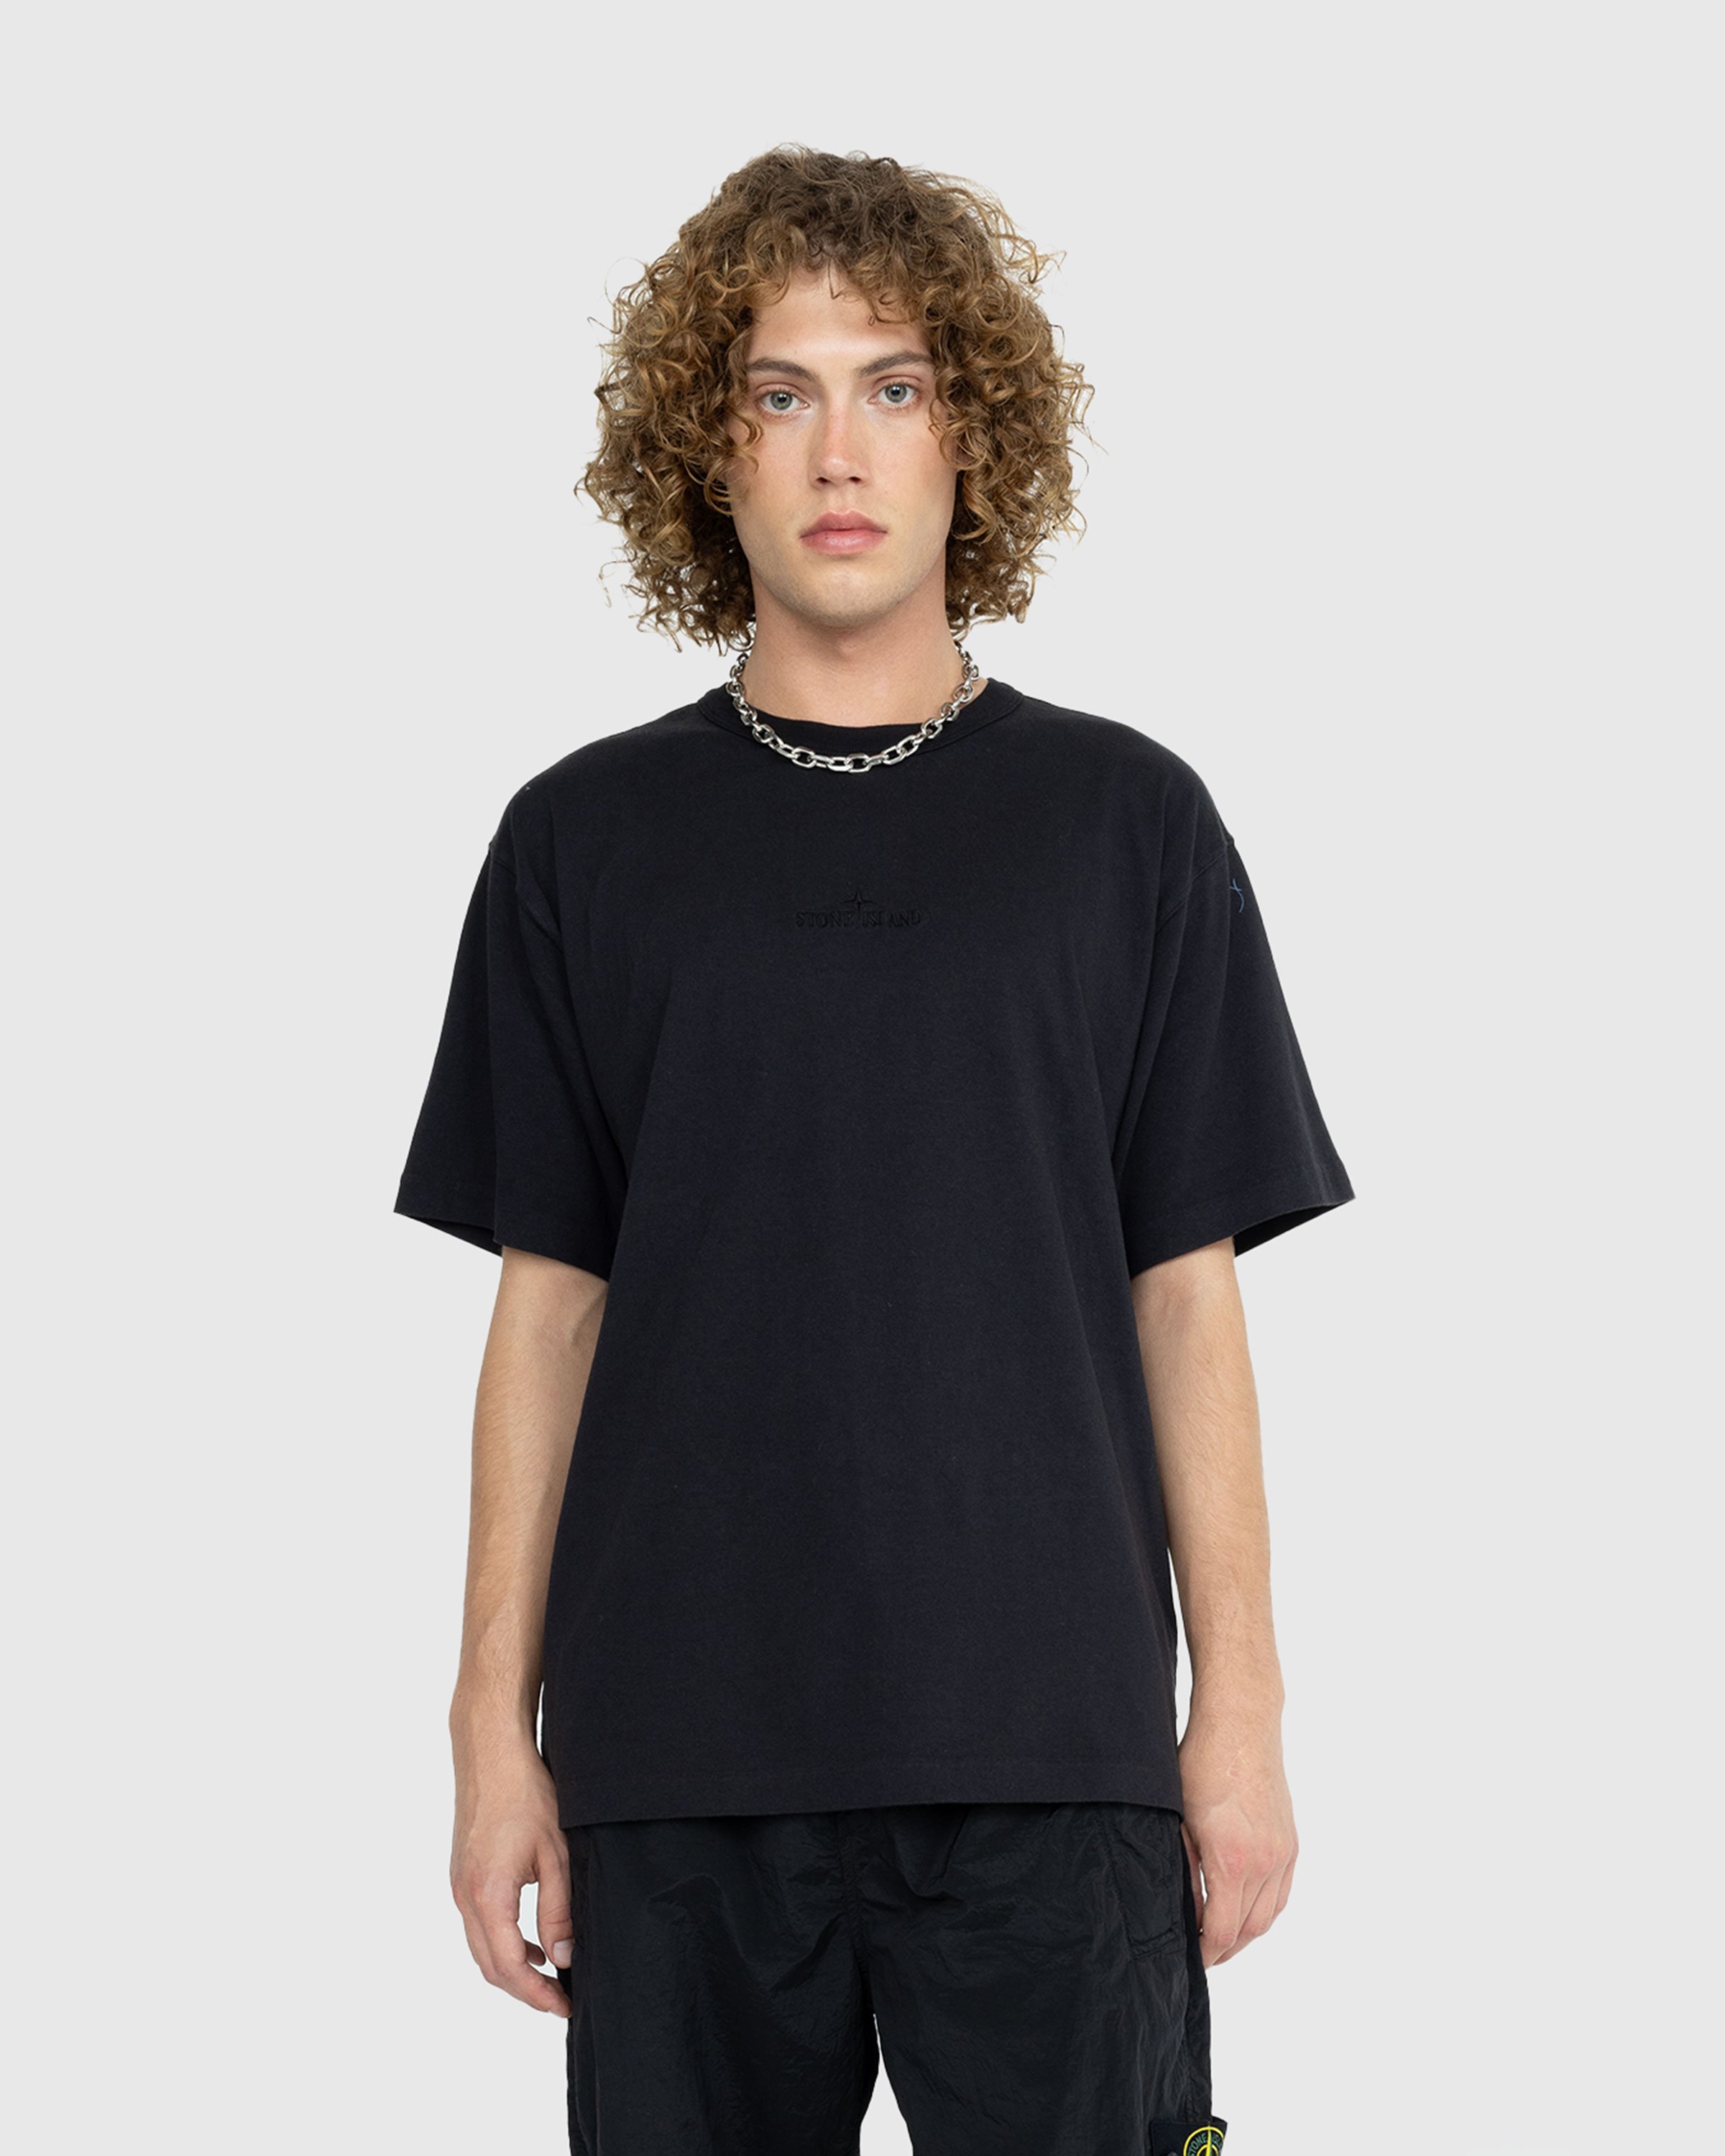 Stone Island - Garment-Dyed Logo T-Shirt Black - Clothing - Black - Image 2